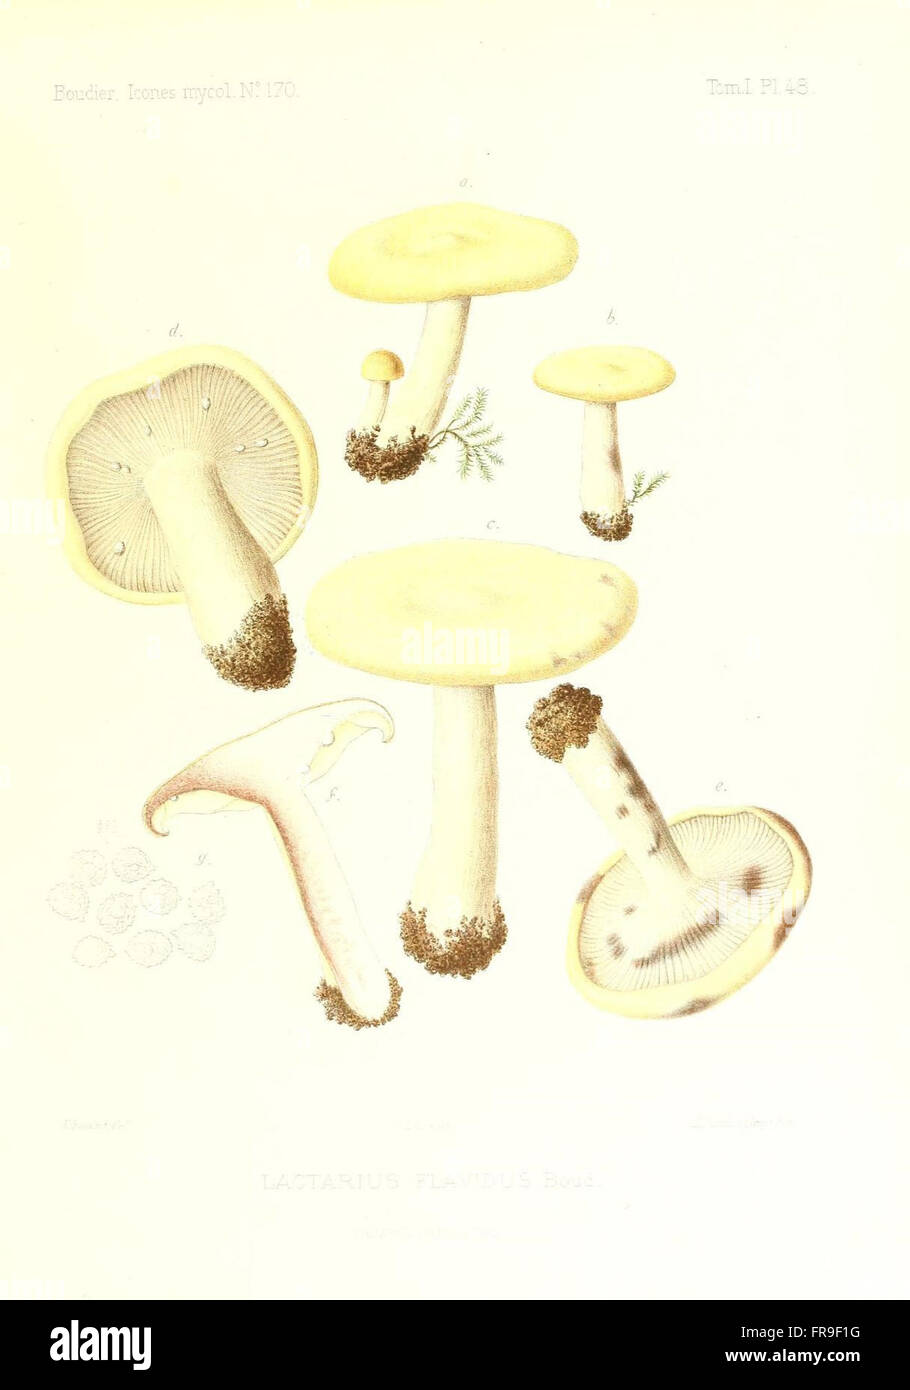 Icones mycologicC3A6, ou Iconographie des champignons de France principalement Discomycetes (Pl. 48) Stock Photo